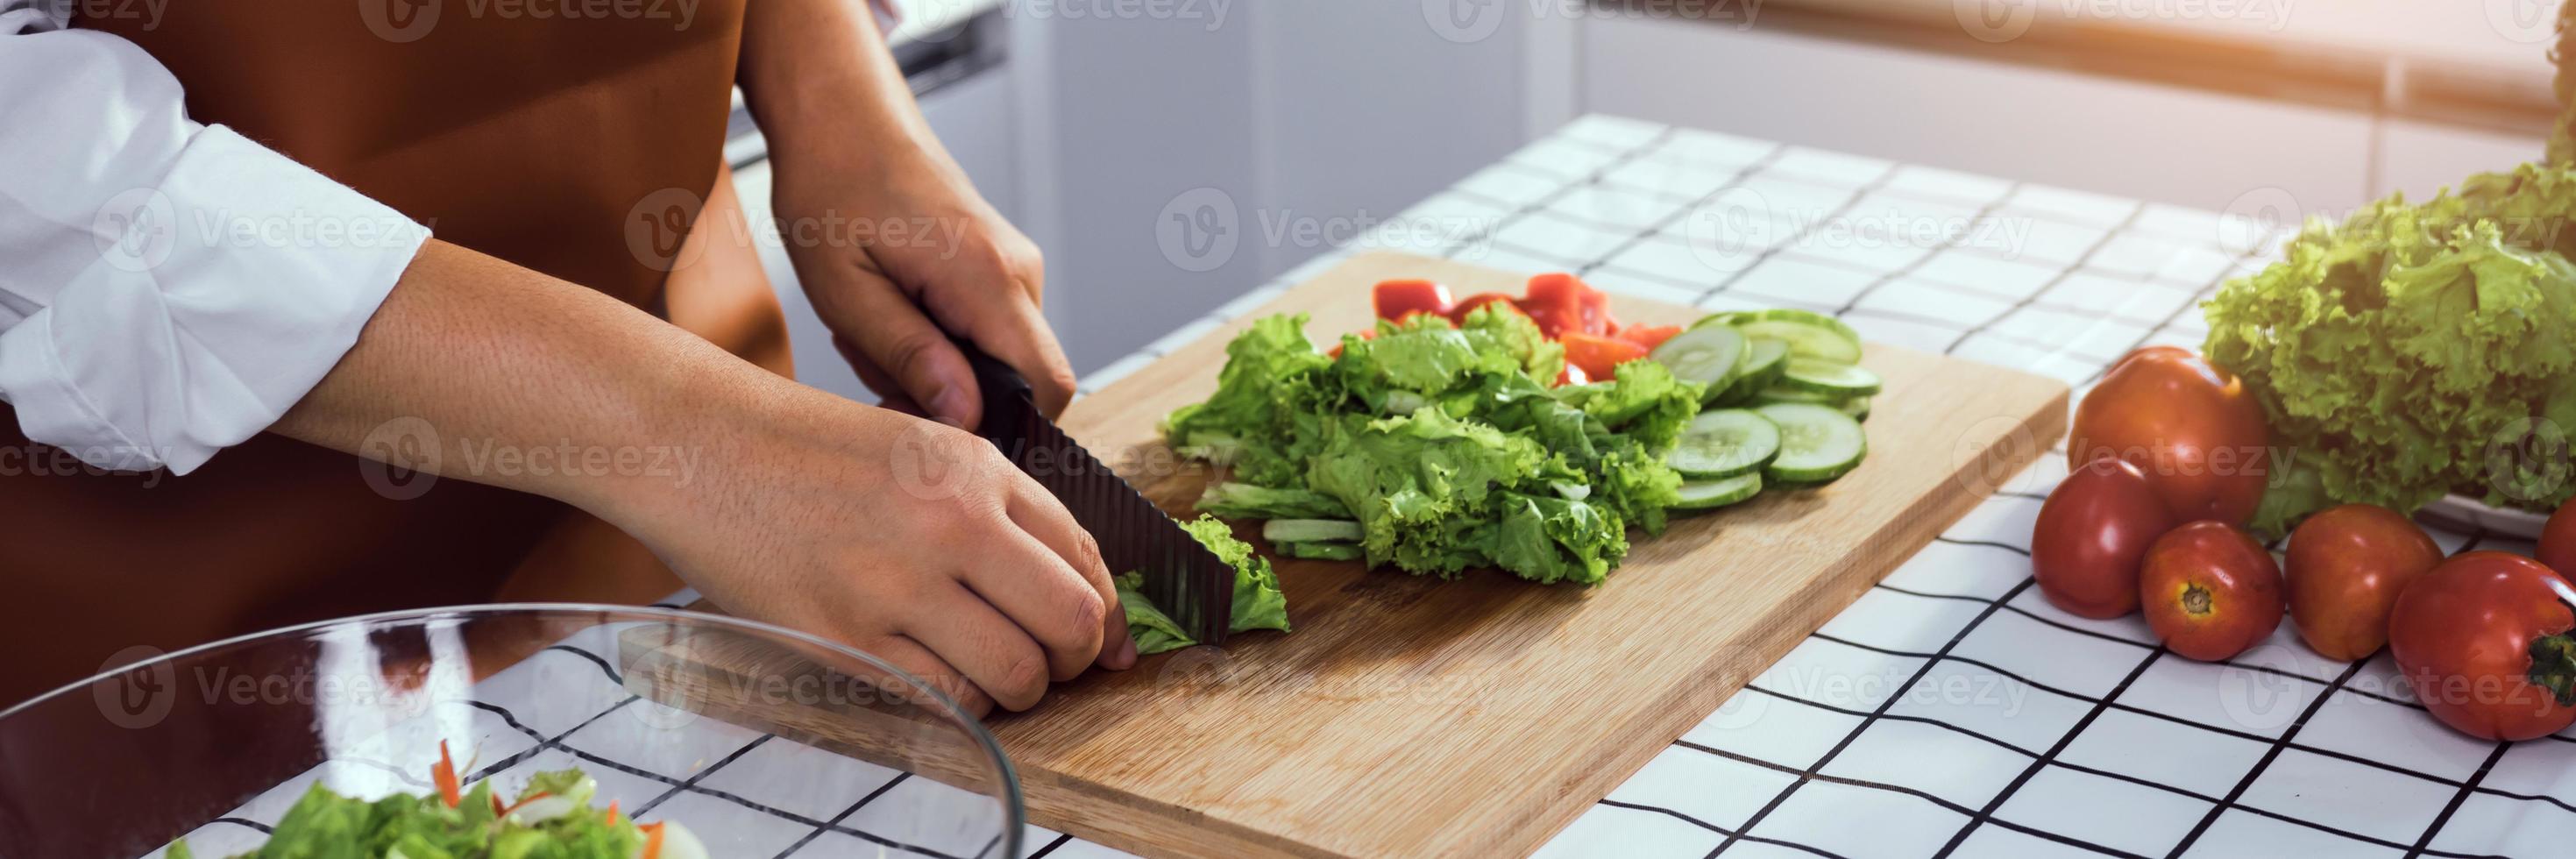 asiatisk kvinna använder en kniv för att skära salladsgrönsakerna i köket. foto